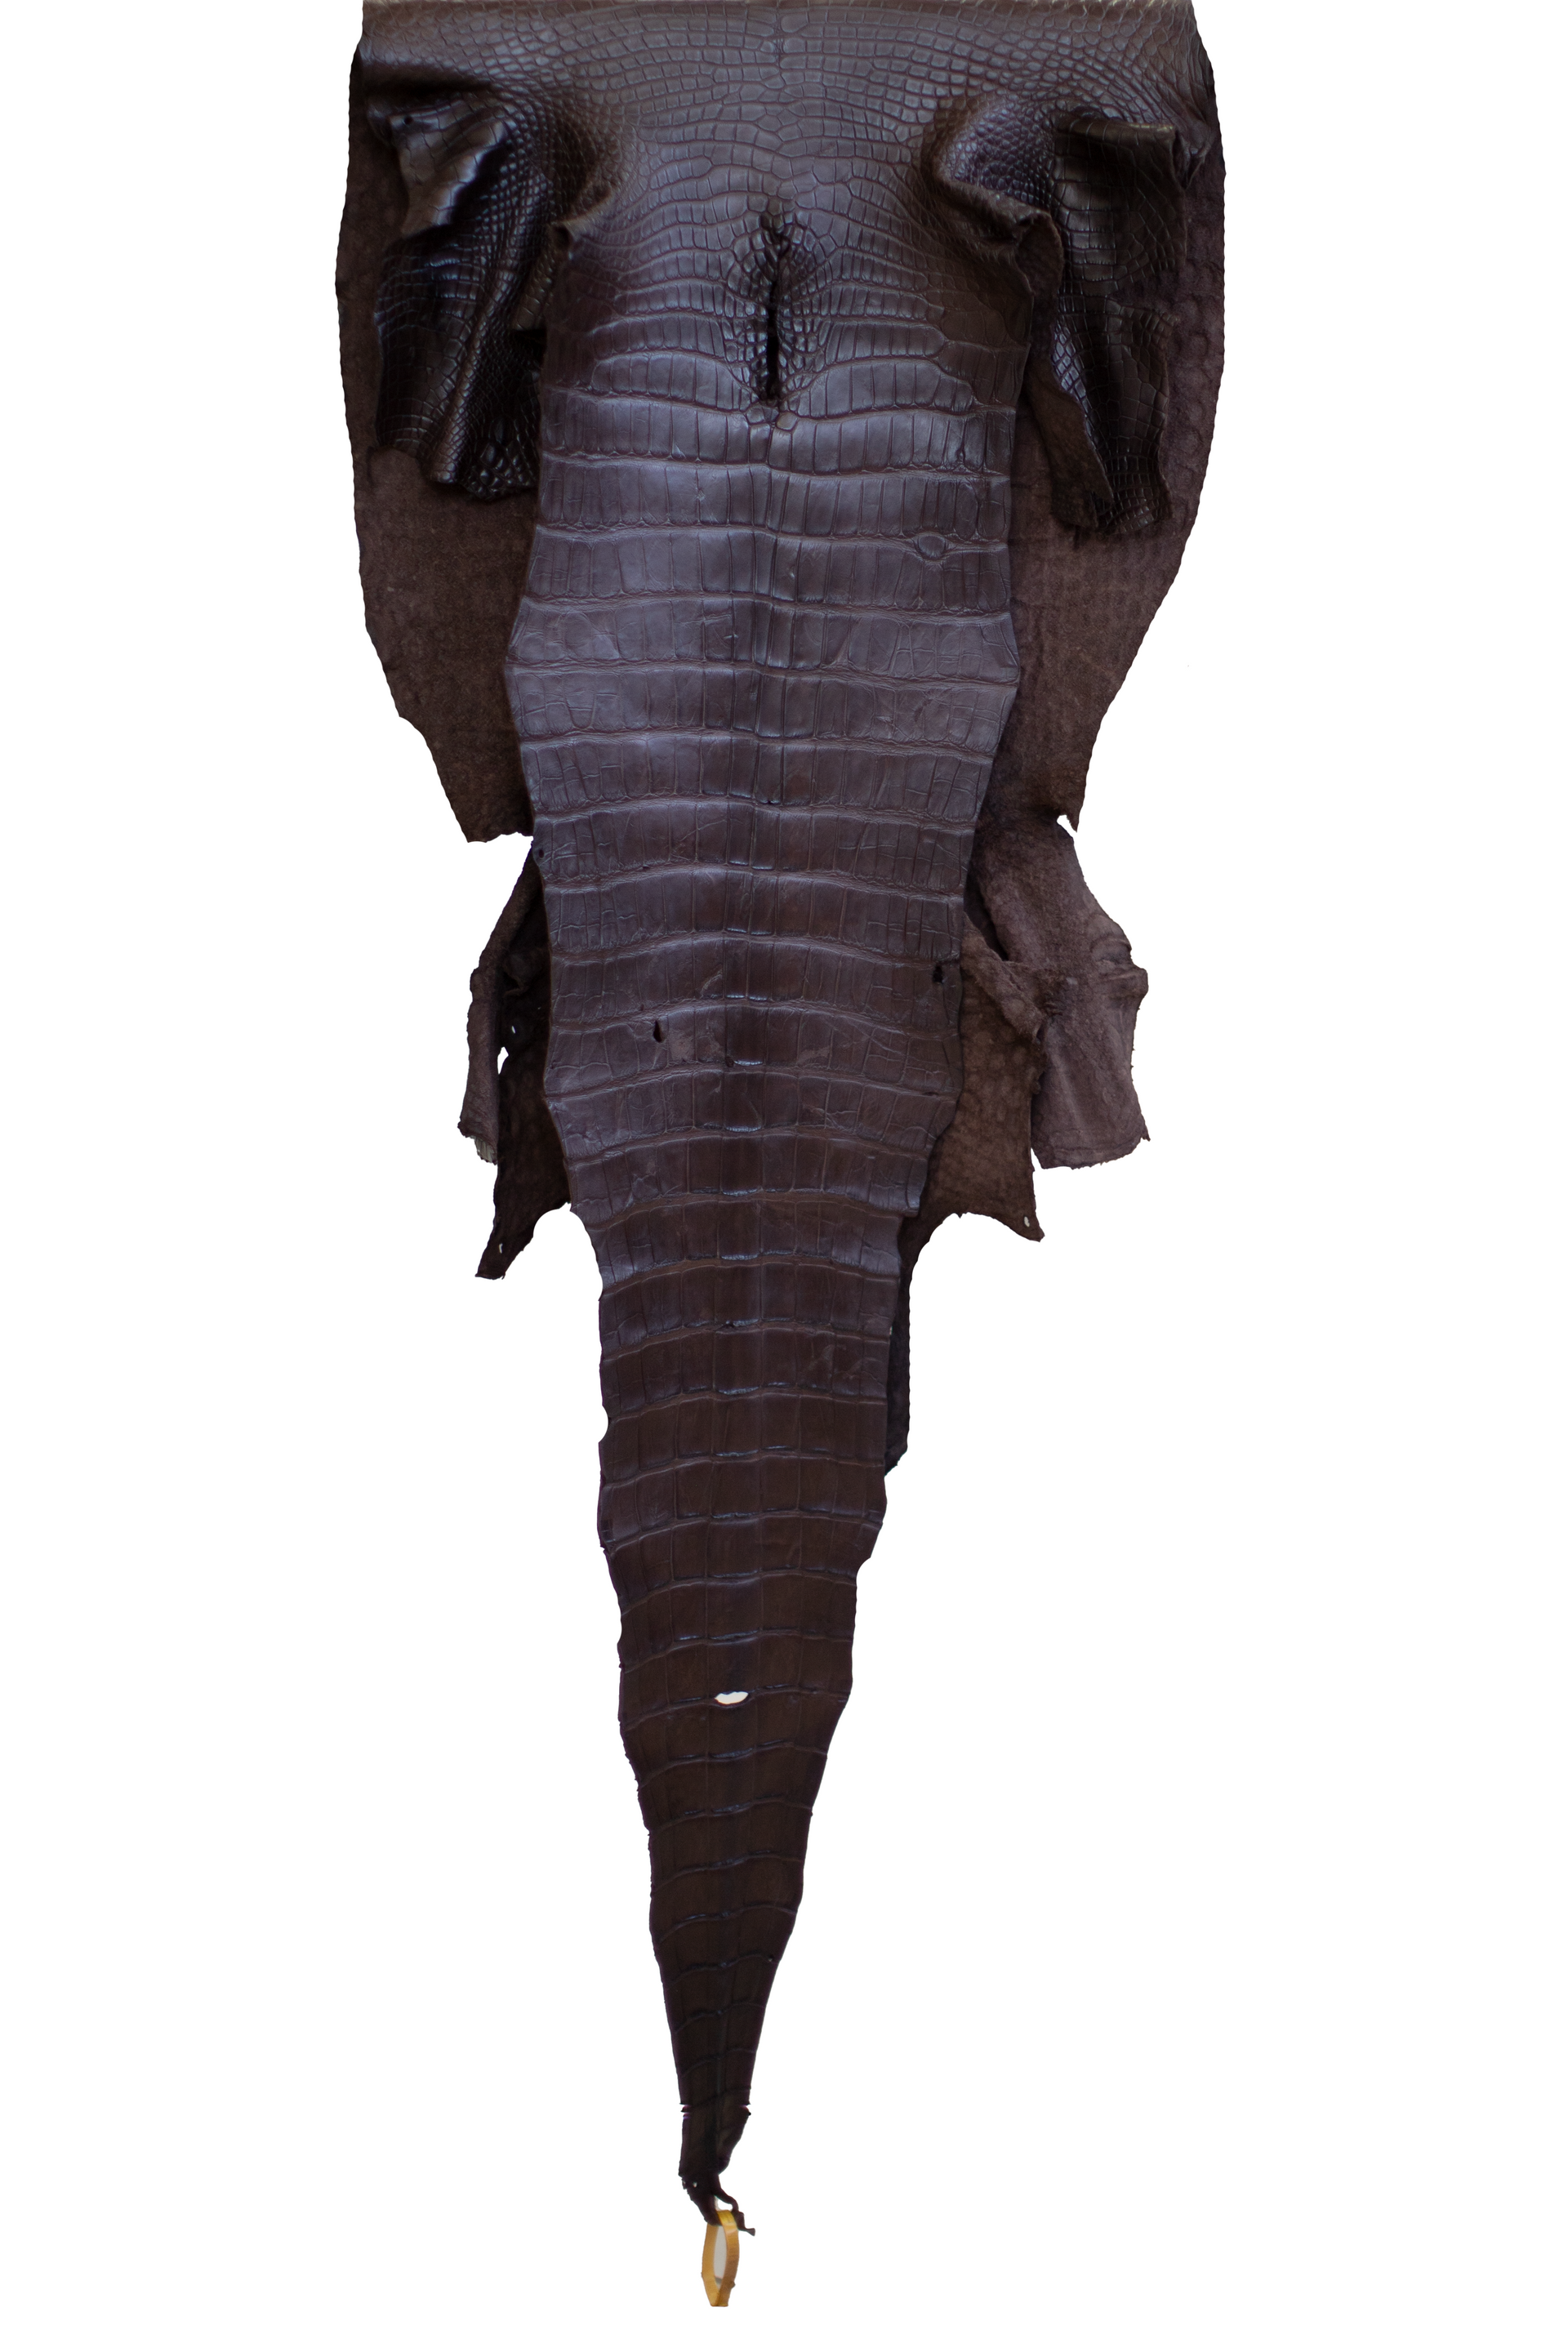 58 cm Grade 3/4 Ideal Brown Matte Wild American Alligator Leather - Tag: LA22-0025096